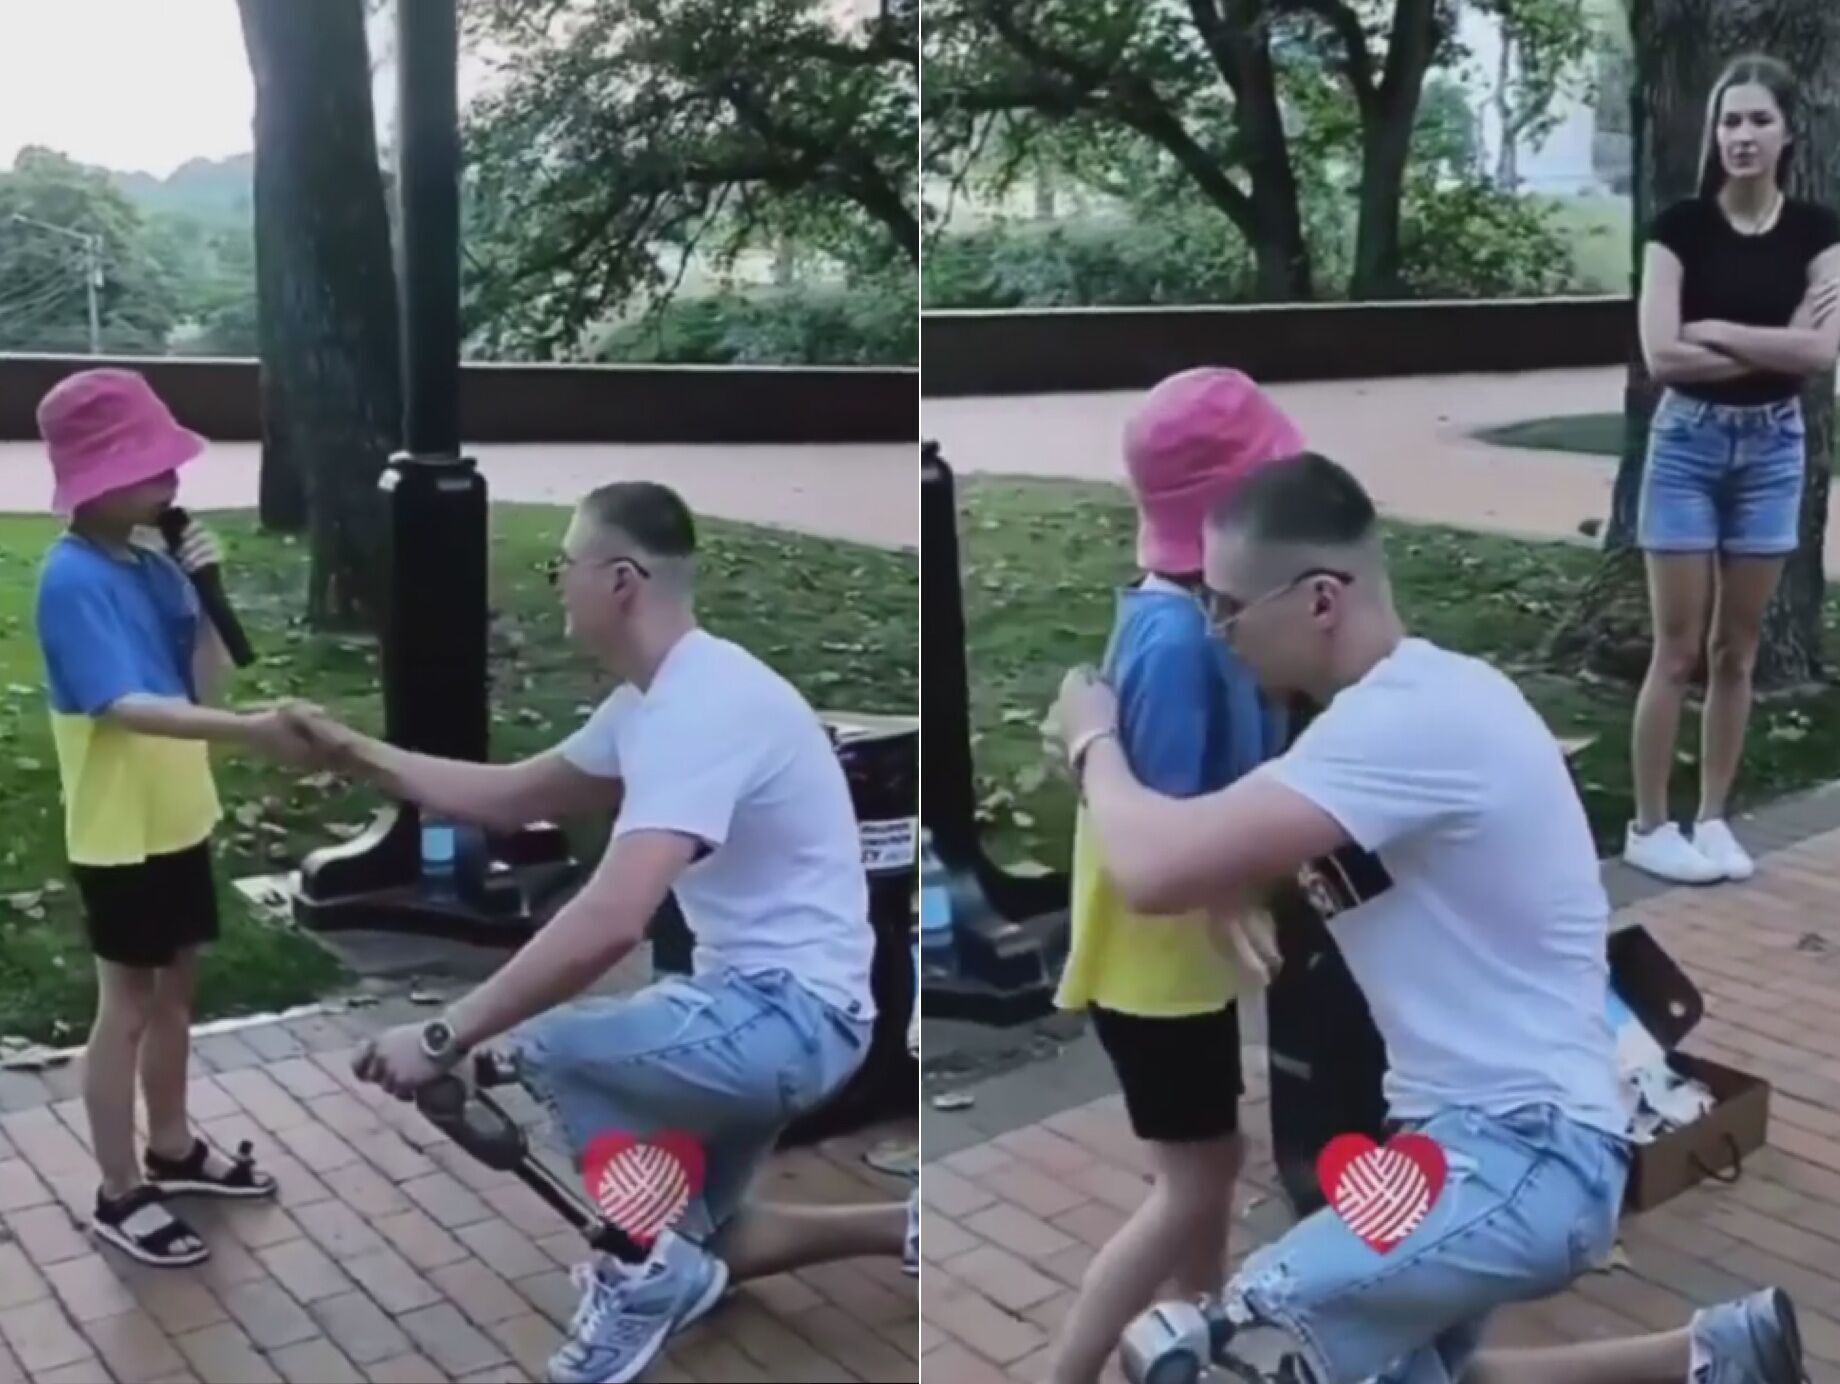 Видео, как защитник Украины на протезе становится на колено и благодарит 8-летнего мальчика, растрогало сеть